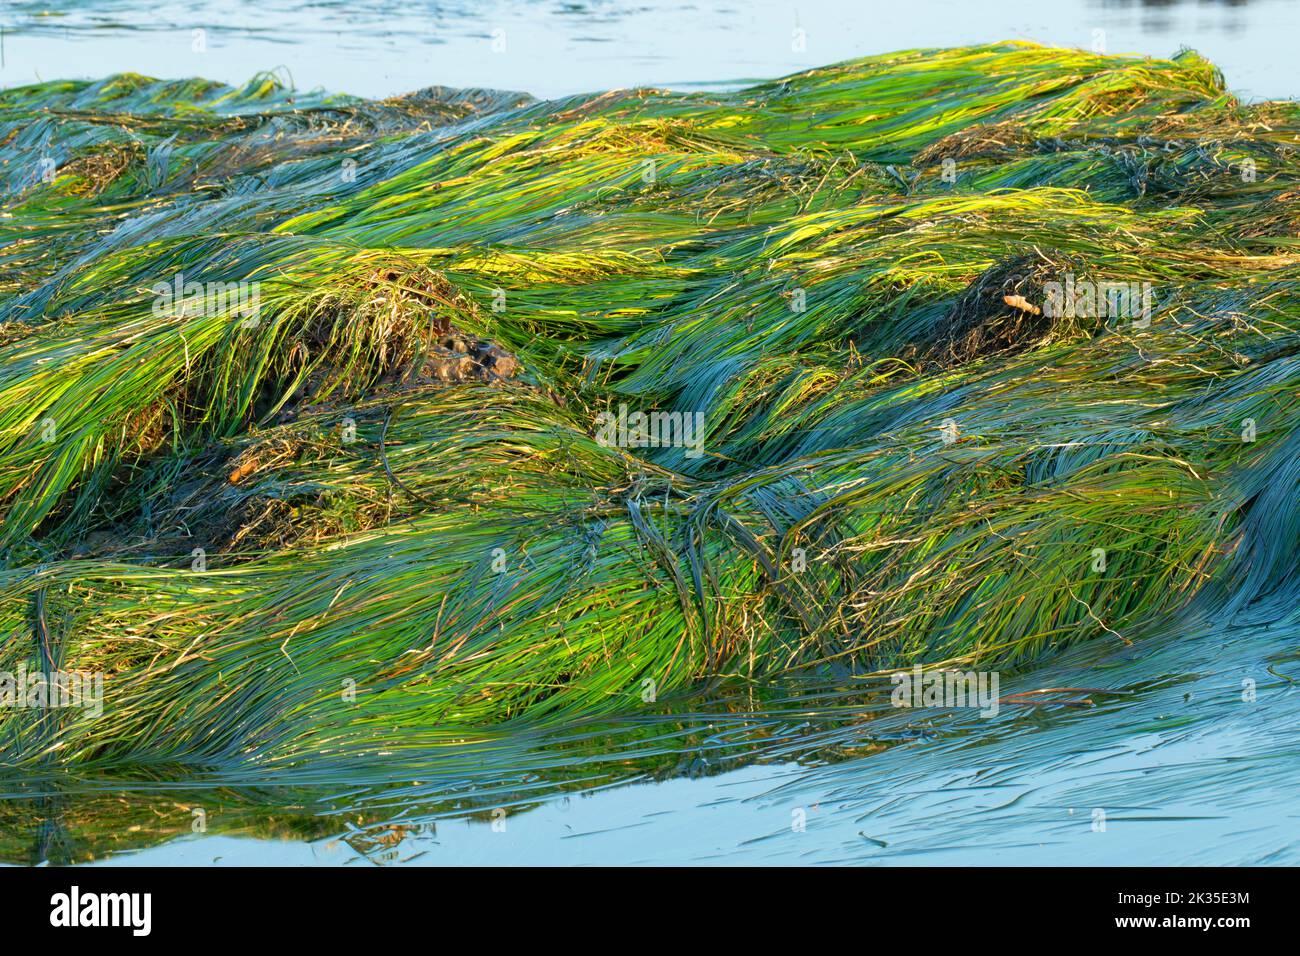 Eelgrass, zone de conservation des ressources naturelles de Shipwreck point, Strait of Juan de Fuca Scenic Byway, Washington Banque D'Images